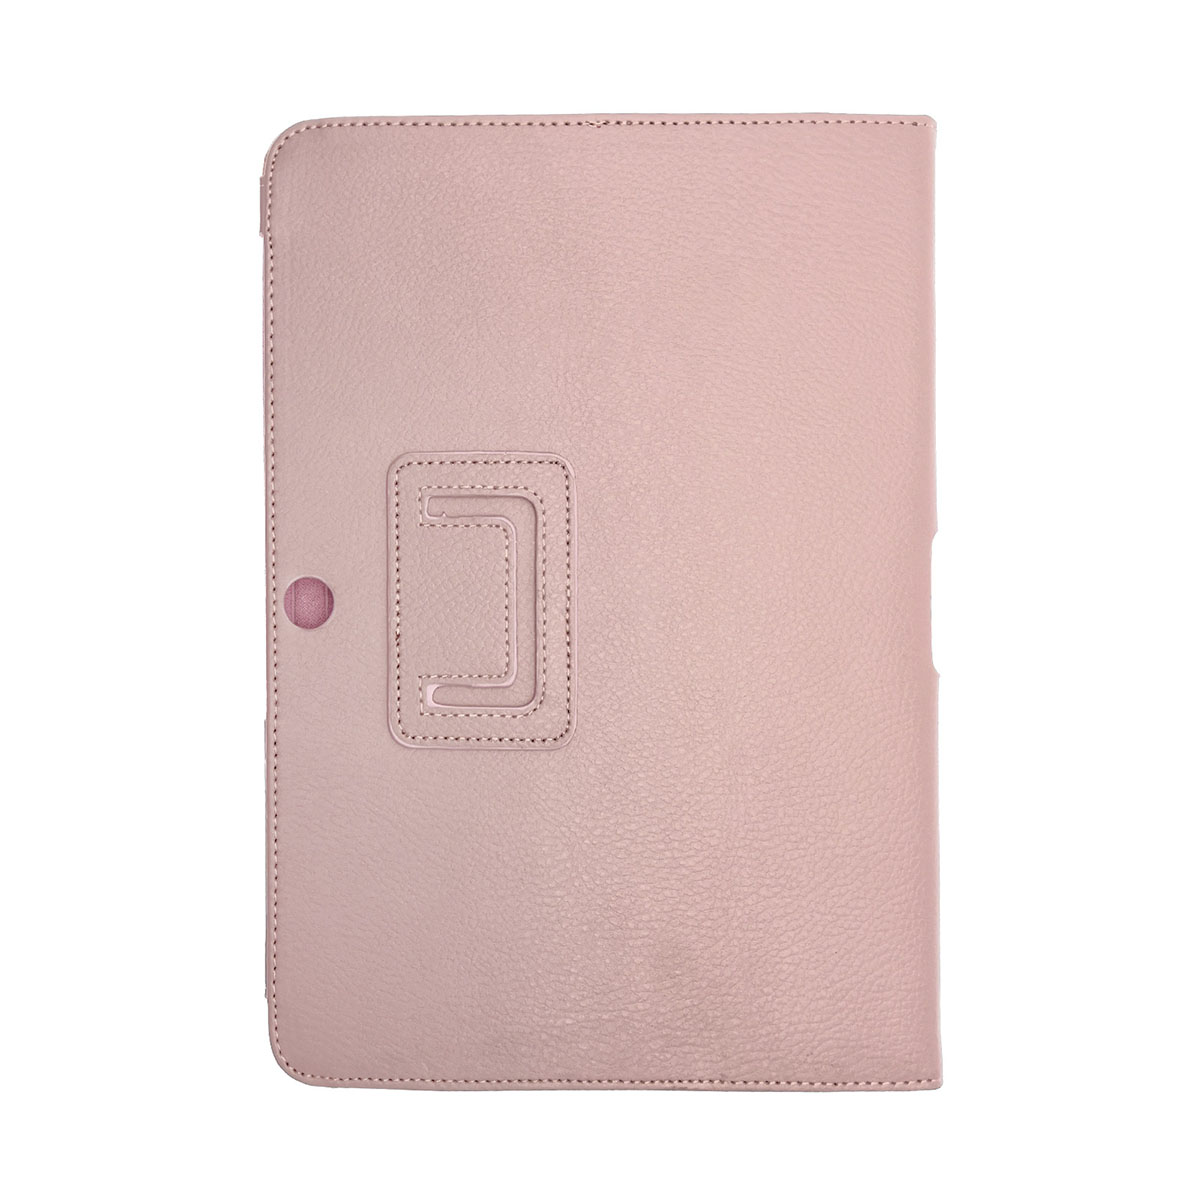 Чехол книжка для SAMSUNG Galaxy Tab 2 10.1 (P5100, P5110), экокожа, цвет розовый.